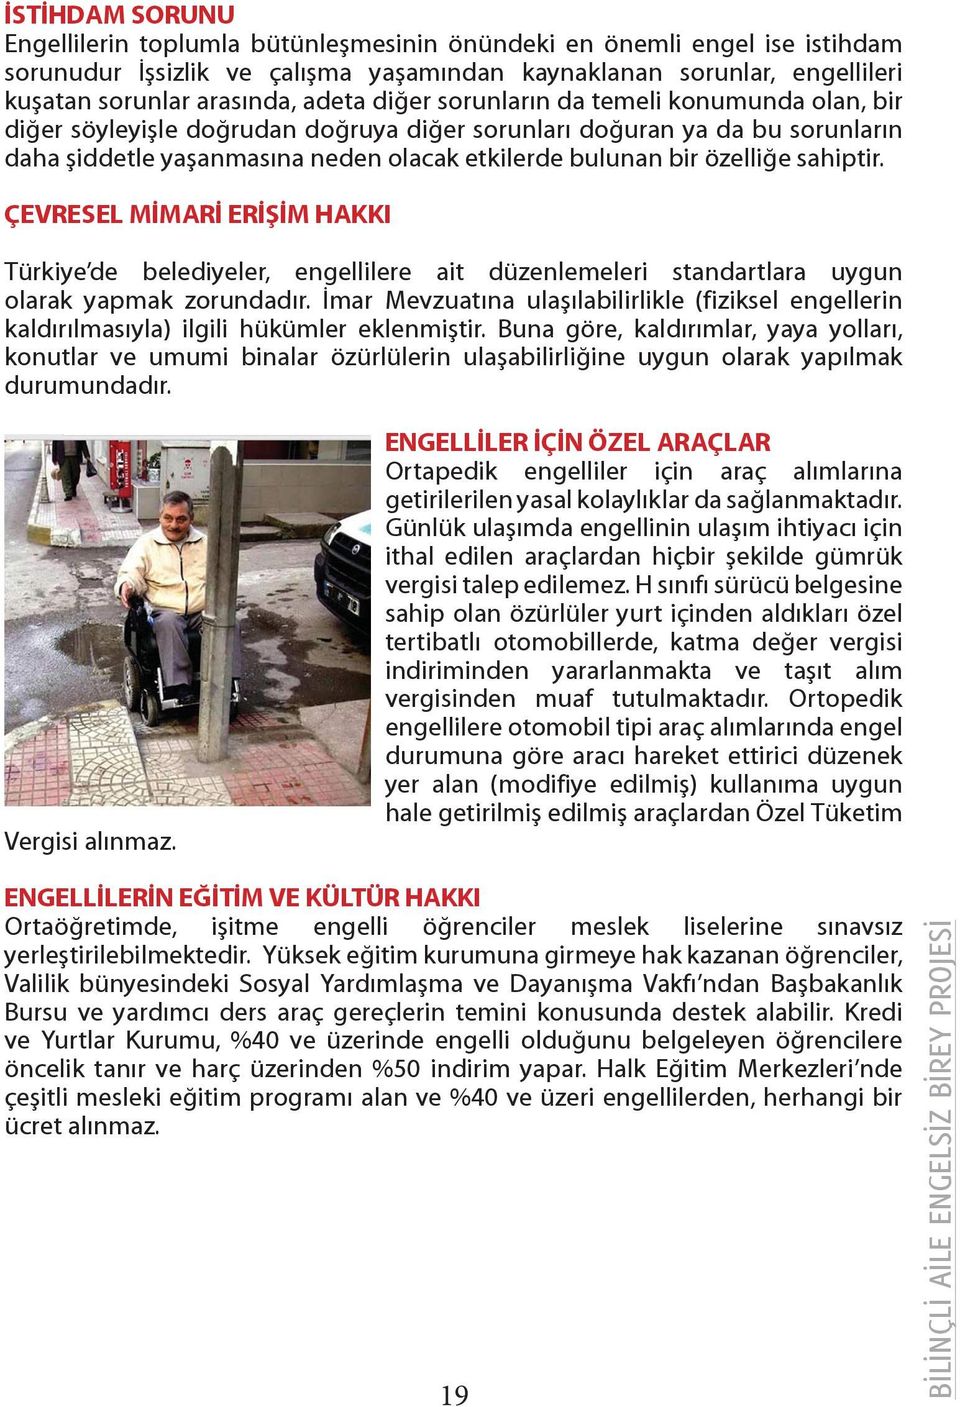 sahiptir. ÇEVRESEL MİMARİ ERİŞİM HAKKI Türkiye de belediyeler, engellilere ait düzenlemeleri standartlara uygun olarak yapmak zorundadır.